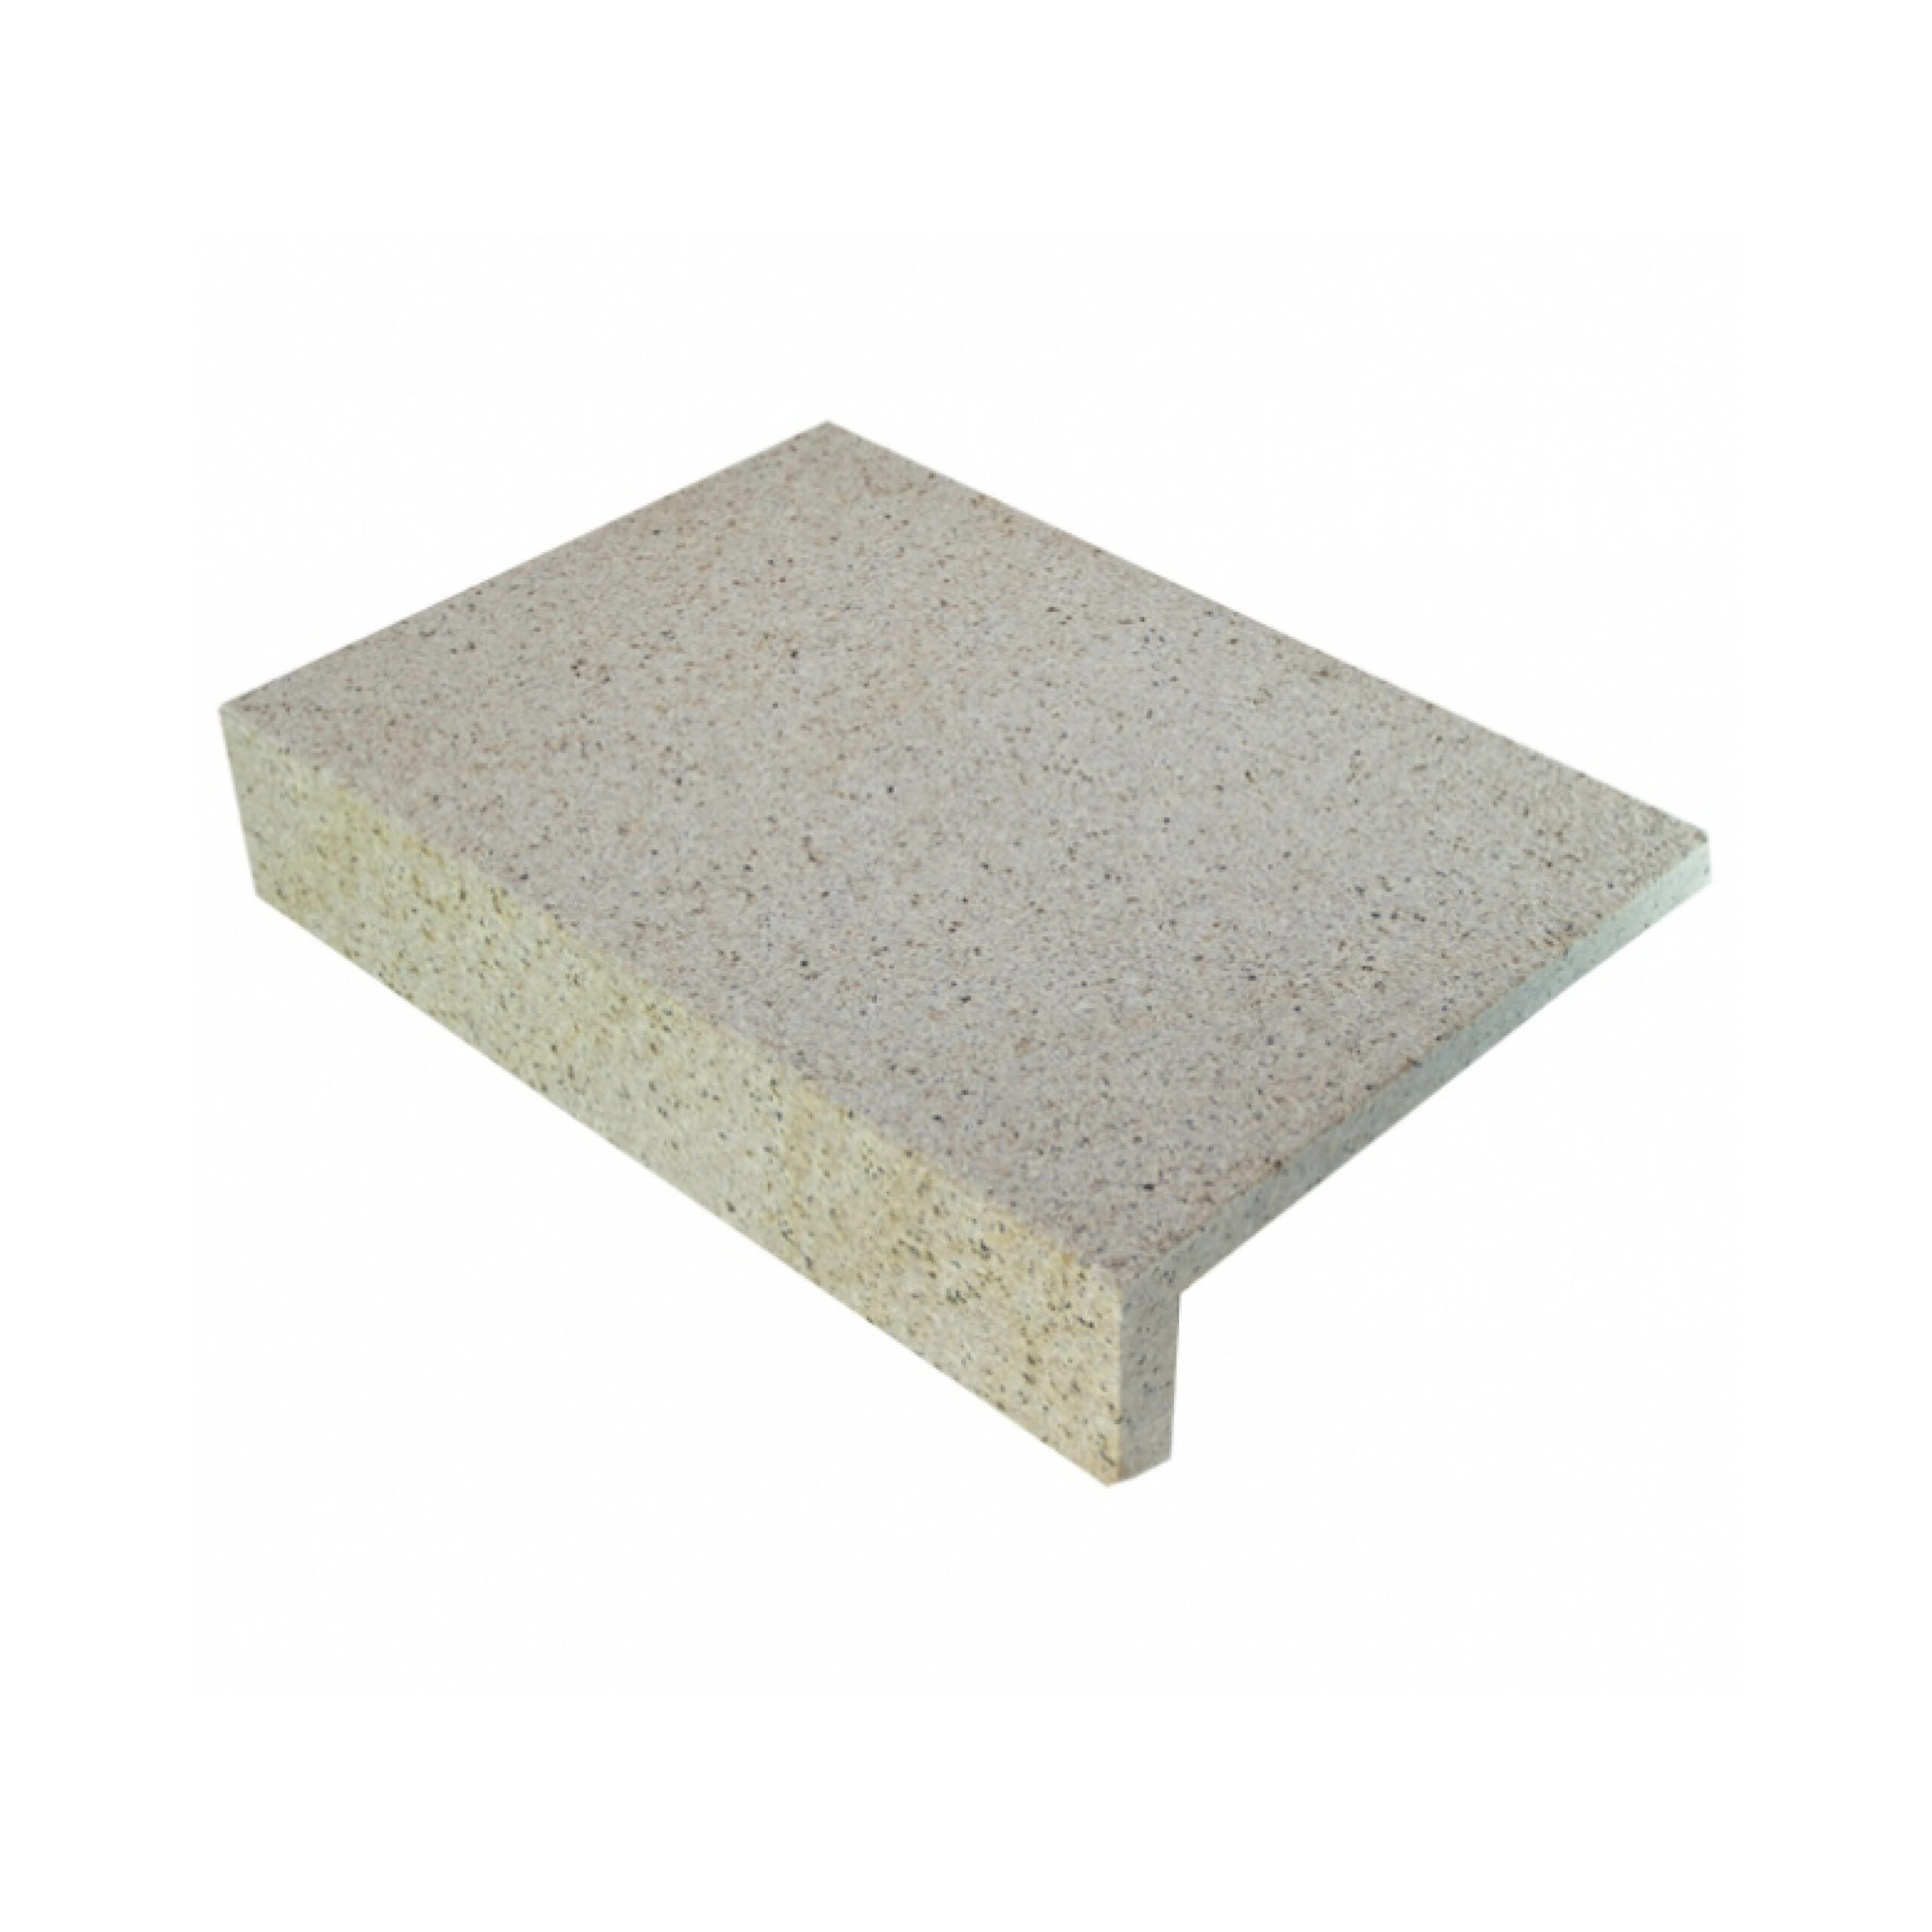 Honeycomb Granite Rebated Edge